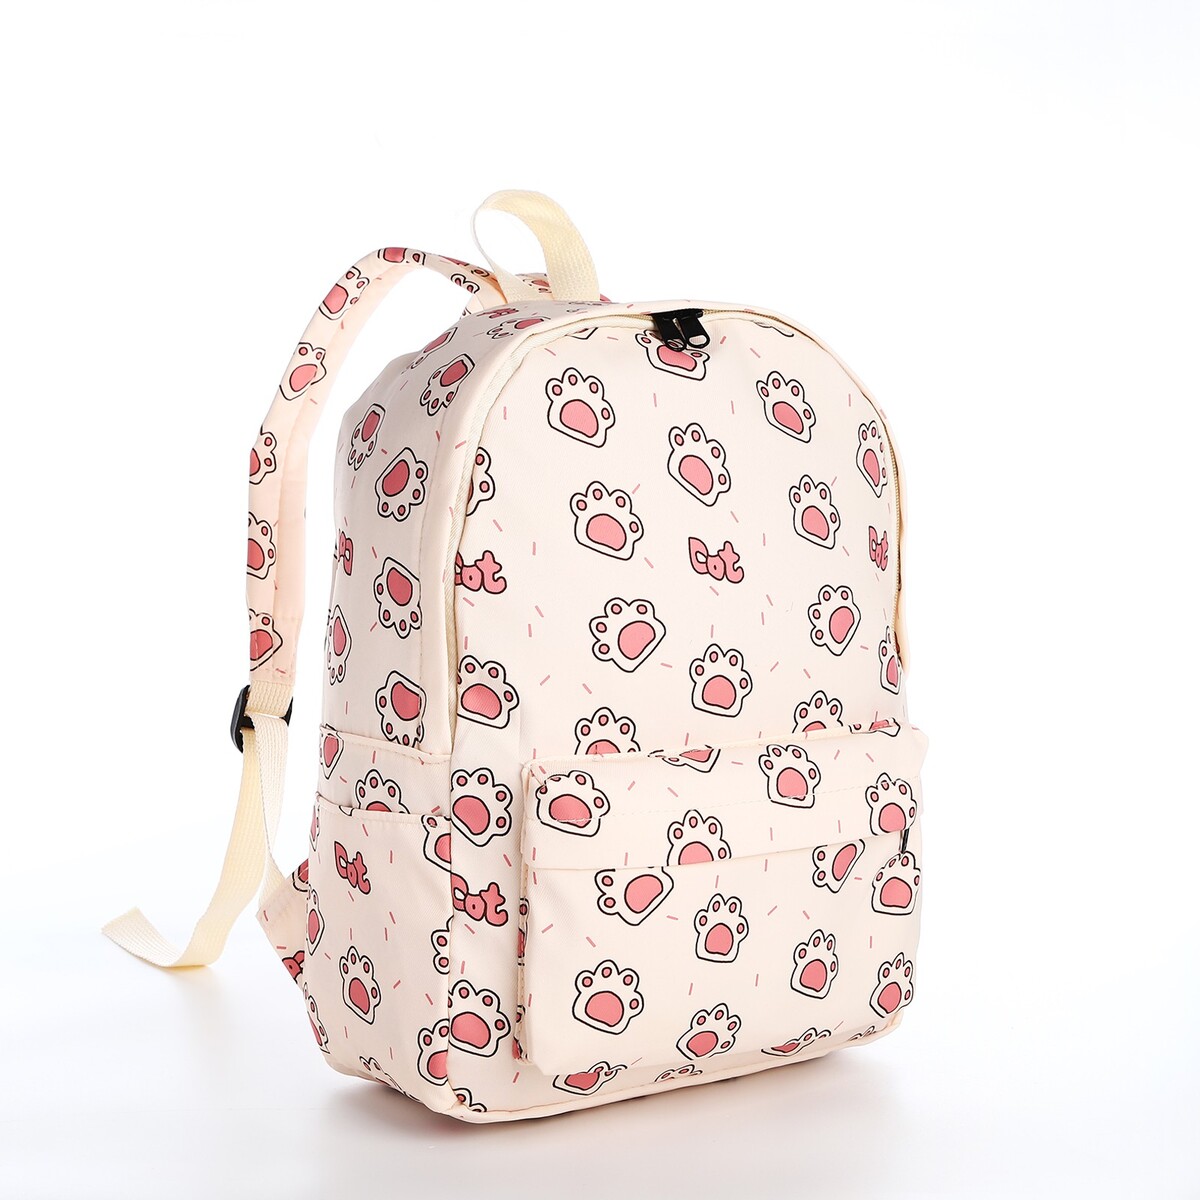 Рюкзак школьный из текстиля на молнии, 3 кармана, цвет бежевый/розовый рюкзак молодежный из текстиля 3 кармана белый бежевый